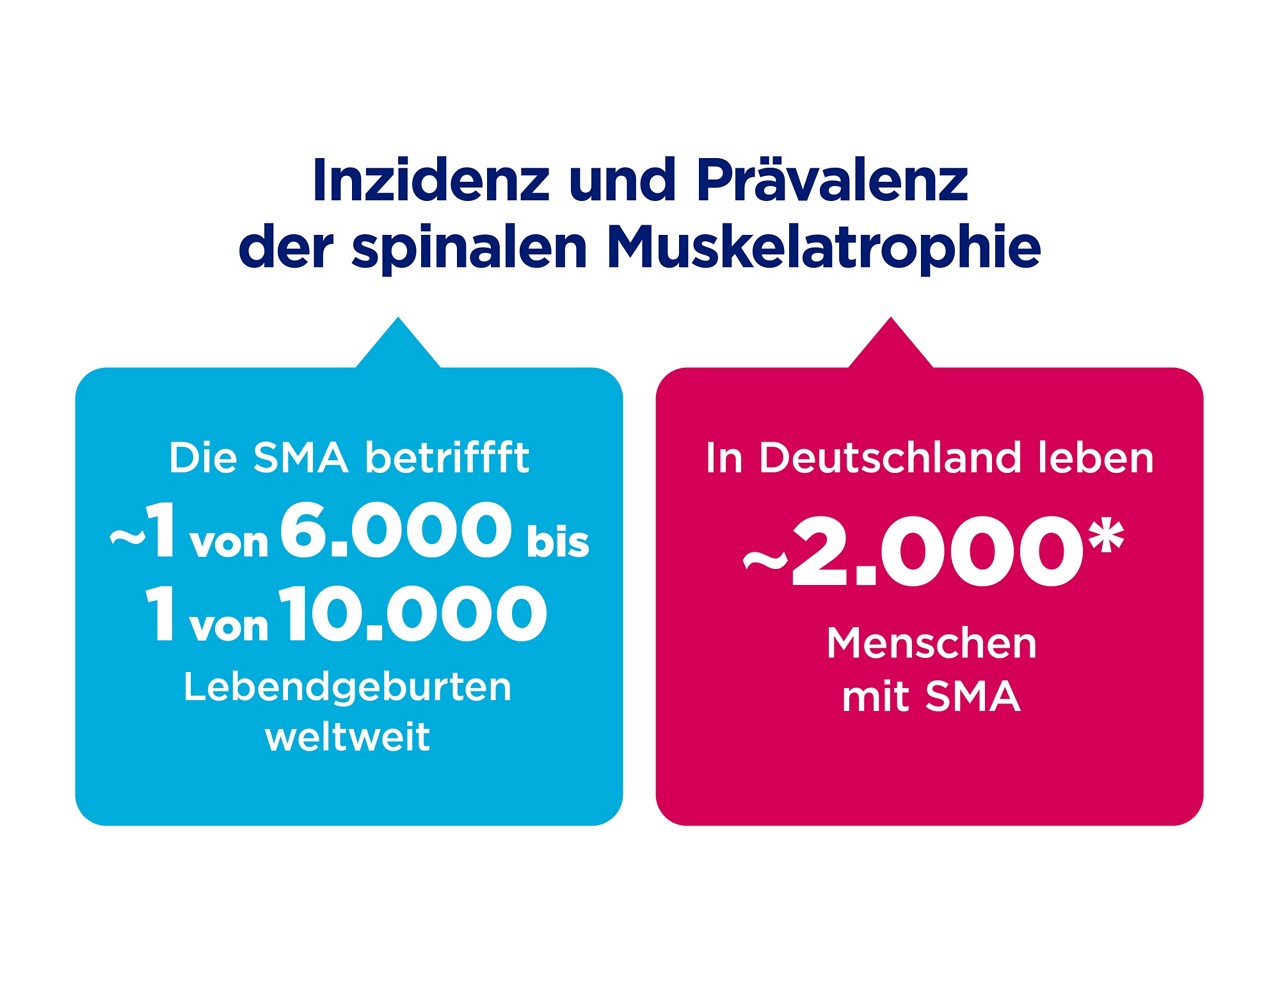 In einem Kasten links steht geschrieben: Die spinale Muskelatrophie betrifft ca. 1 von 6000 bis 10000 Lebendgeburten weltweit. In einem Kasten rechts steht geschrieben: In Deutschland leben ca. 2000 Menschen mit spinaler Muskelatrophie.